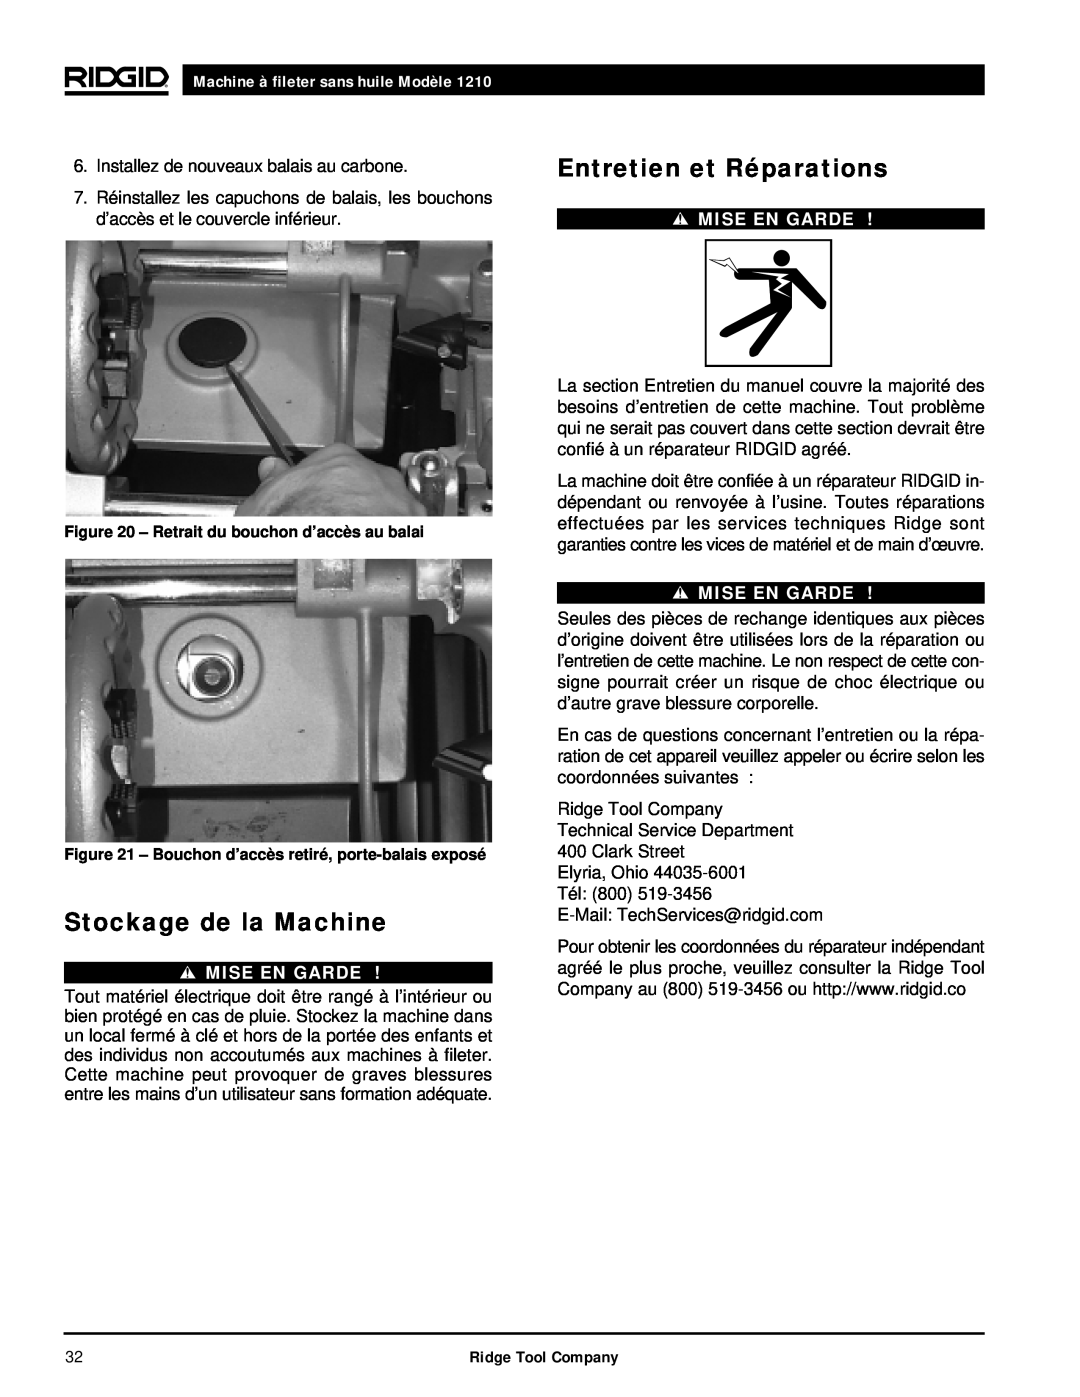 RIDGID 1210 manual Stockage de la Machine, Entretien et Réparations, Machine à fileter sans huile Modèle, Mise En Garde 